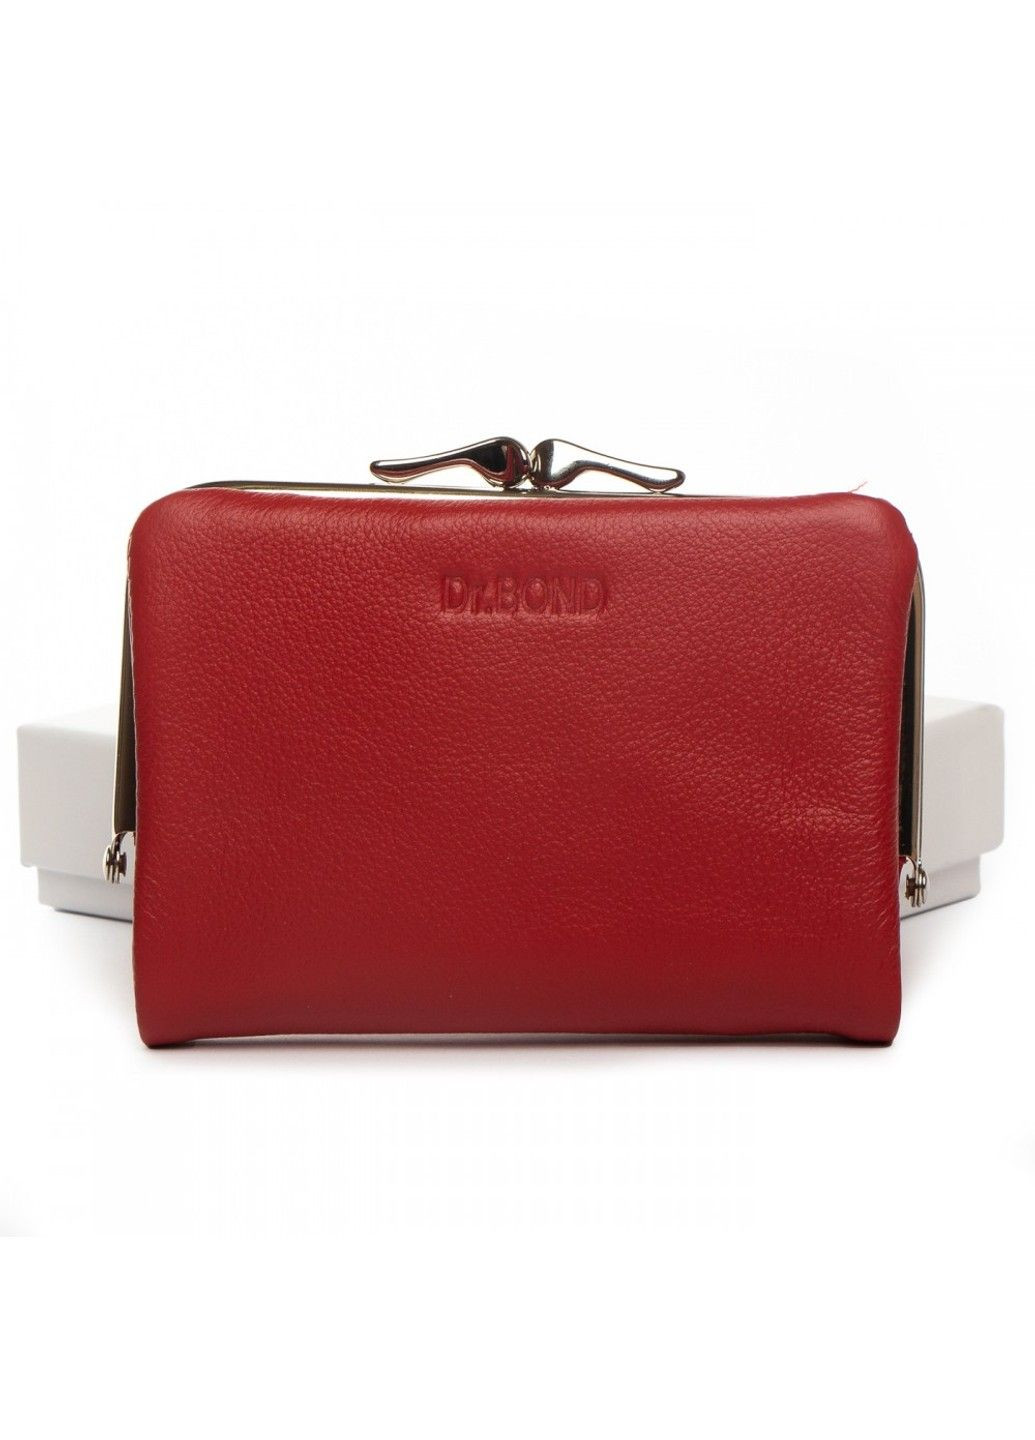 Шкіряний жіночий гаманець Classik WN-23-14 red Dr. Bond (282557219)